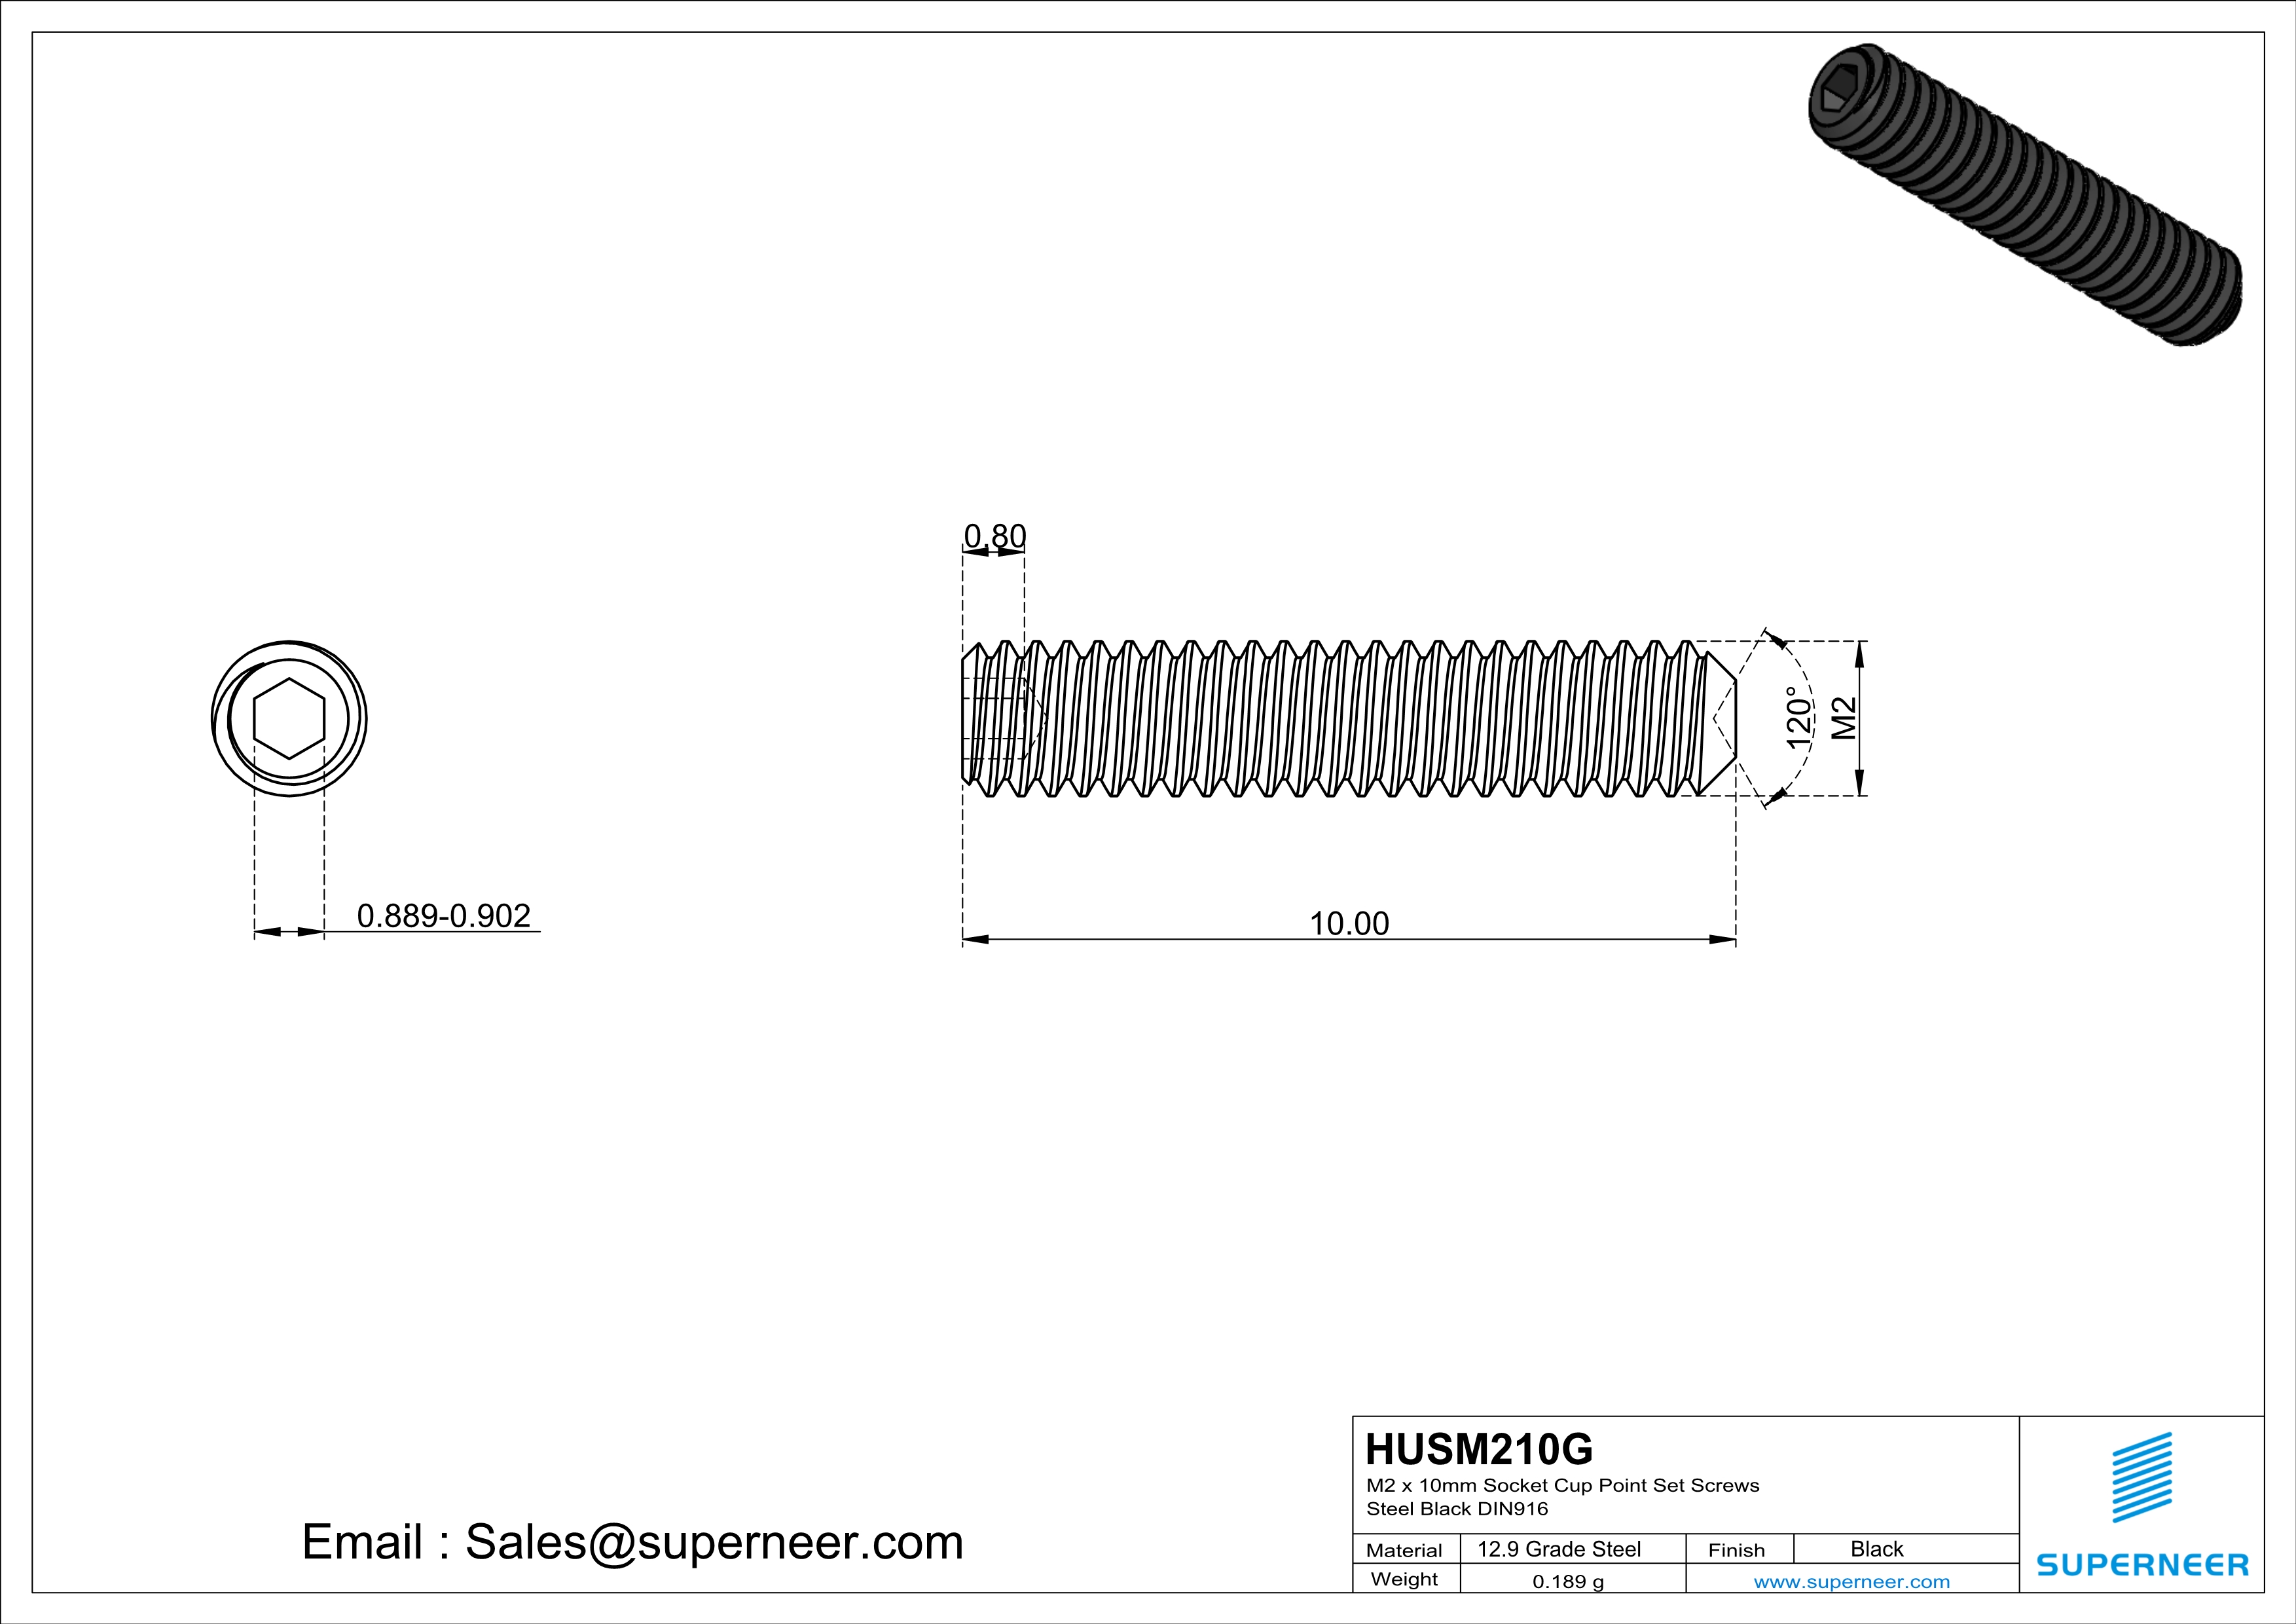 M2 x 10mm Socket Cup Point Set Screws 12.9 Carbon Steel Black DIN916